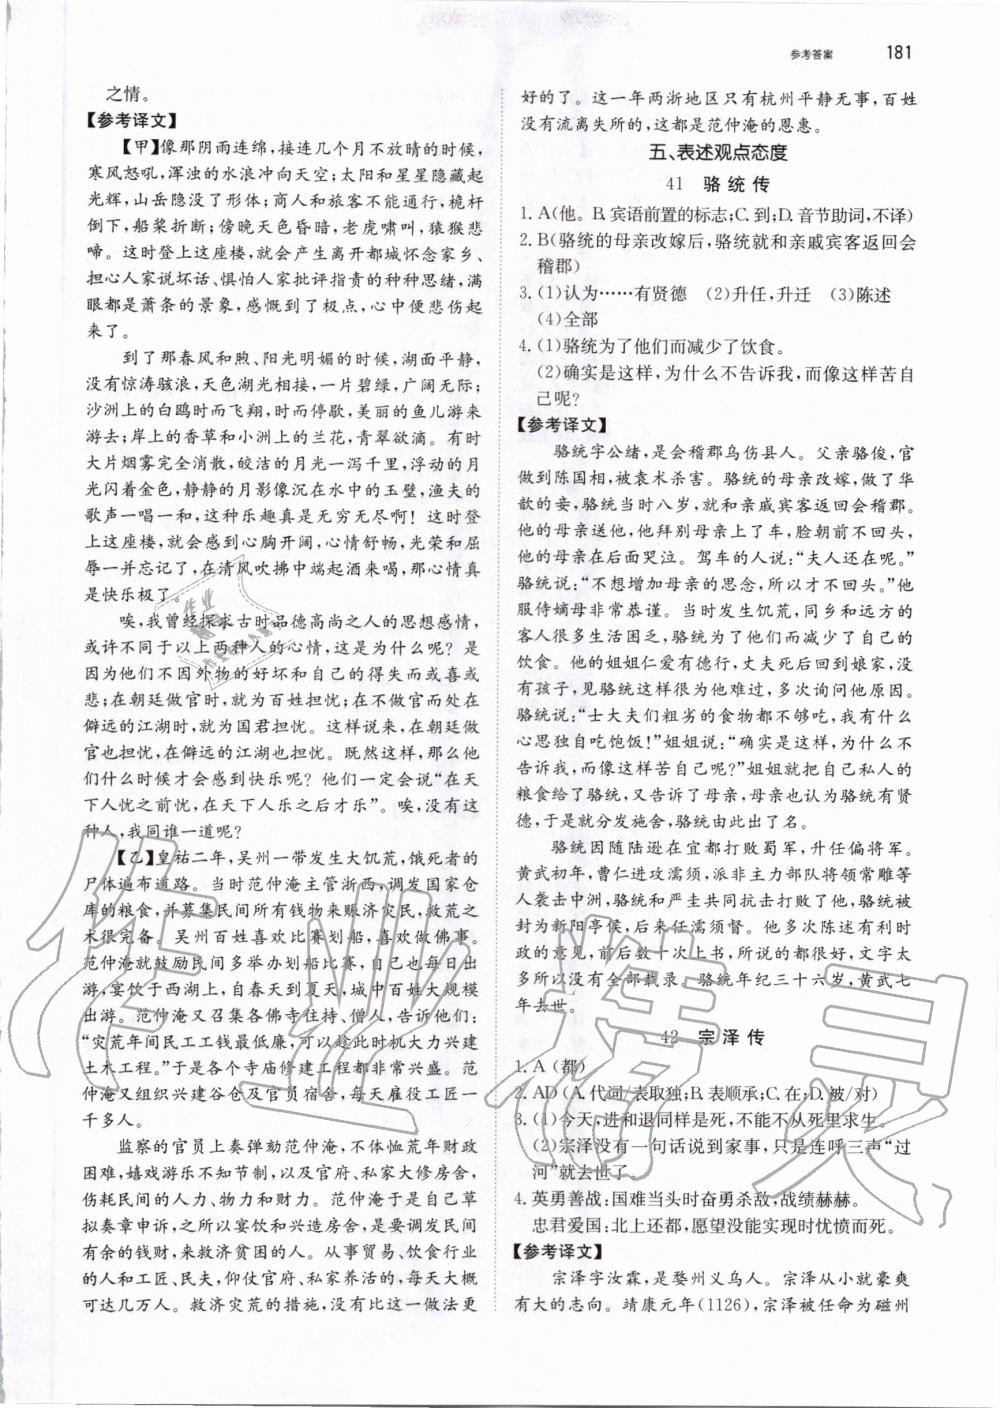 2019年锐阅读初中语文阅读训练5合1中考 第27页